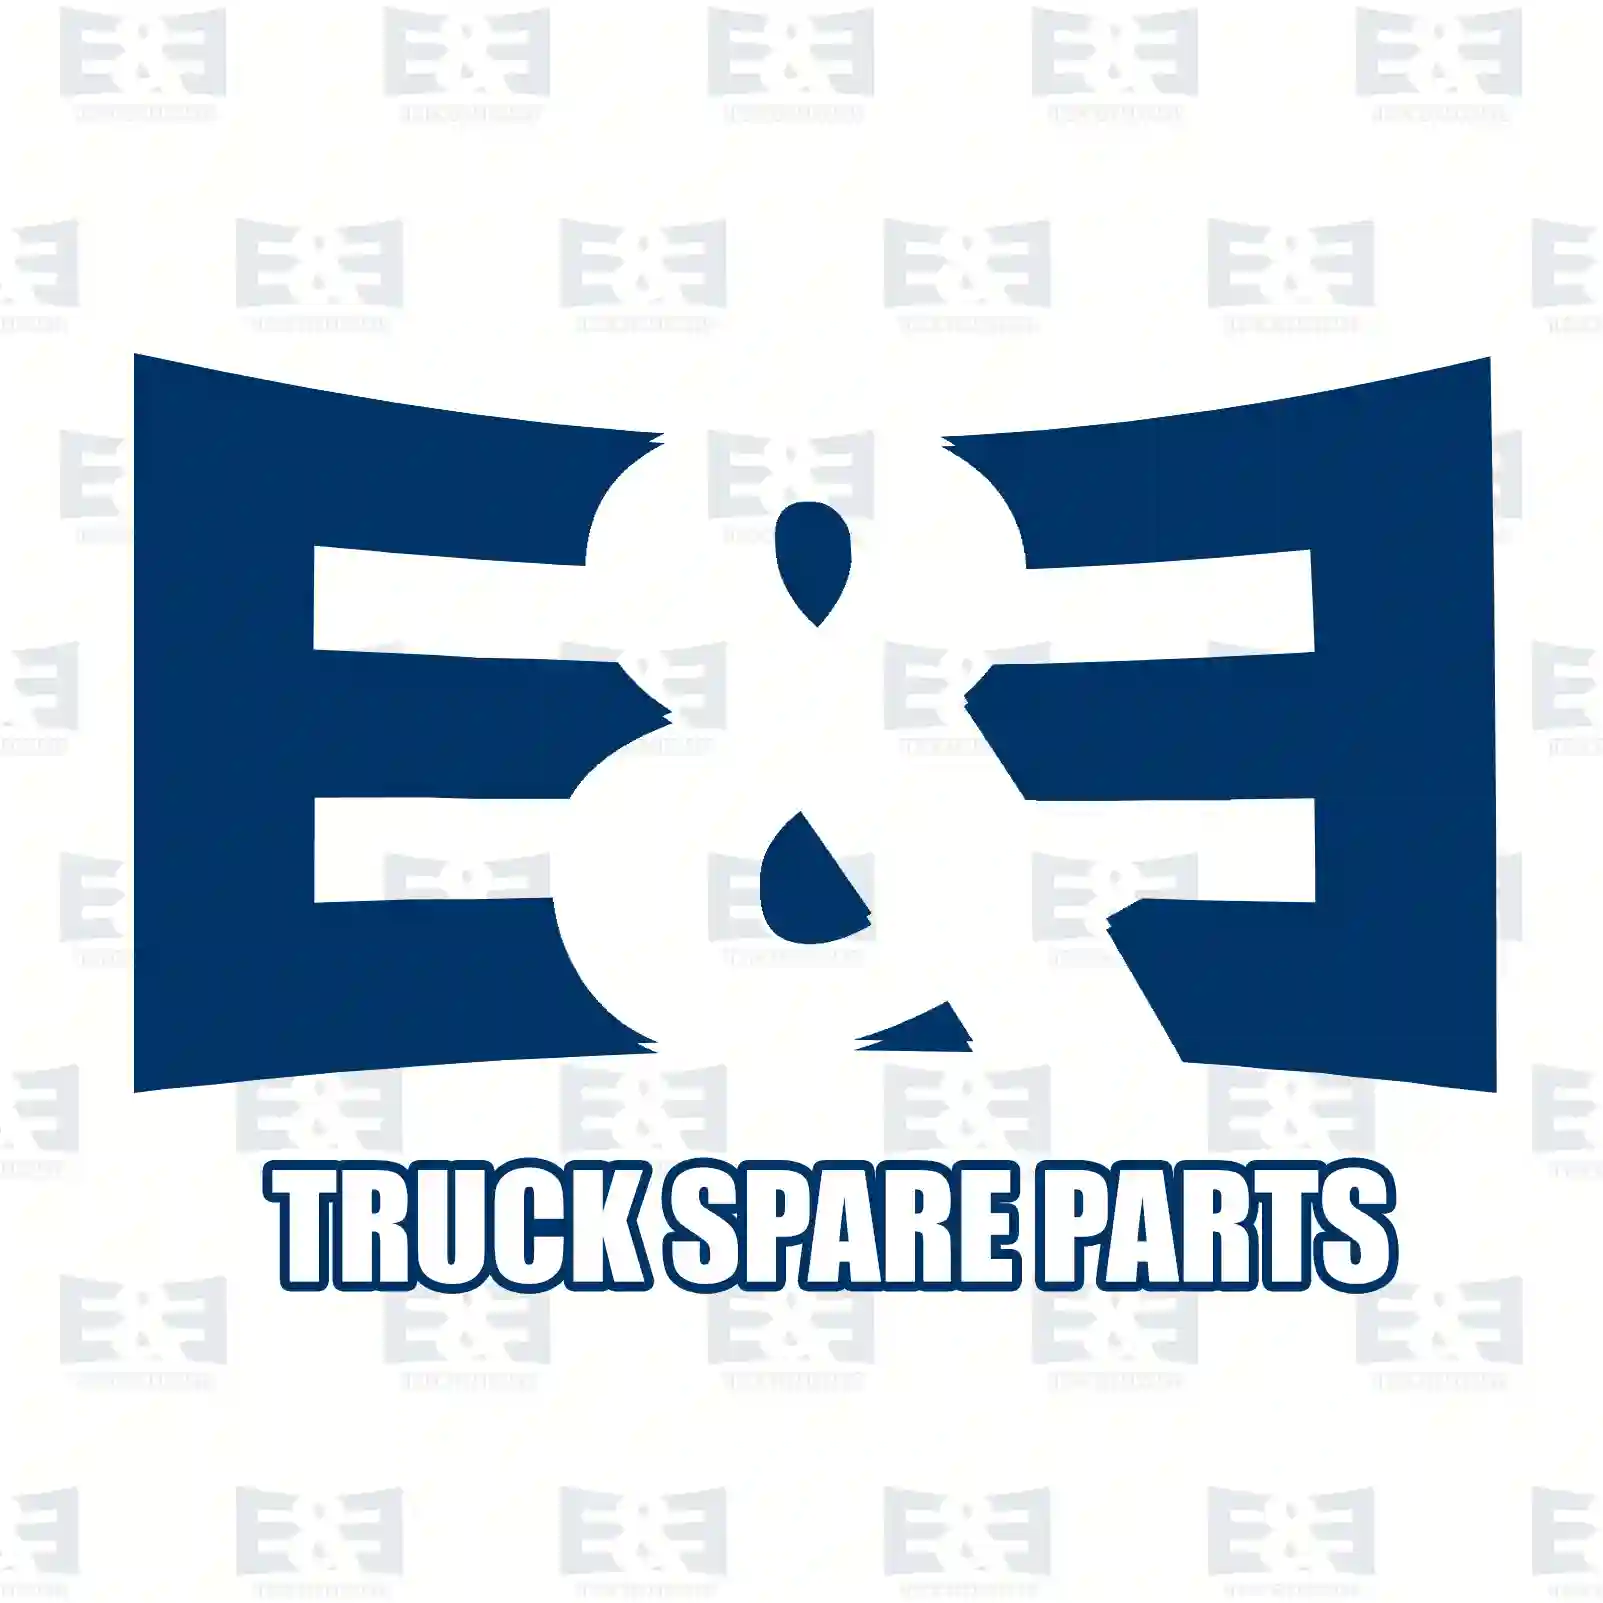 O-ring, 2E2285493, 17283581, 17283581, , ||  2E2285493 E&E Truck Spare Parts | Truck Spare Parts, Auotomotive Spare Parts O-ring, 2E2285493, 17283581, 17283581, , ||  2E2285493 E&E Truck Spare Parts | Truck Spare Parts, Auotomotive Spare Parts